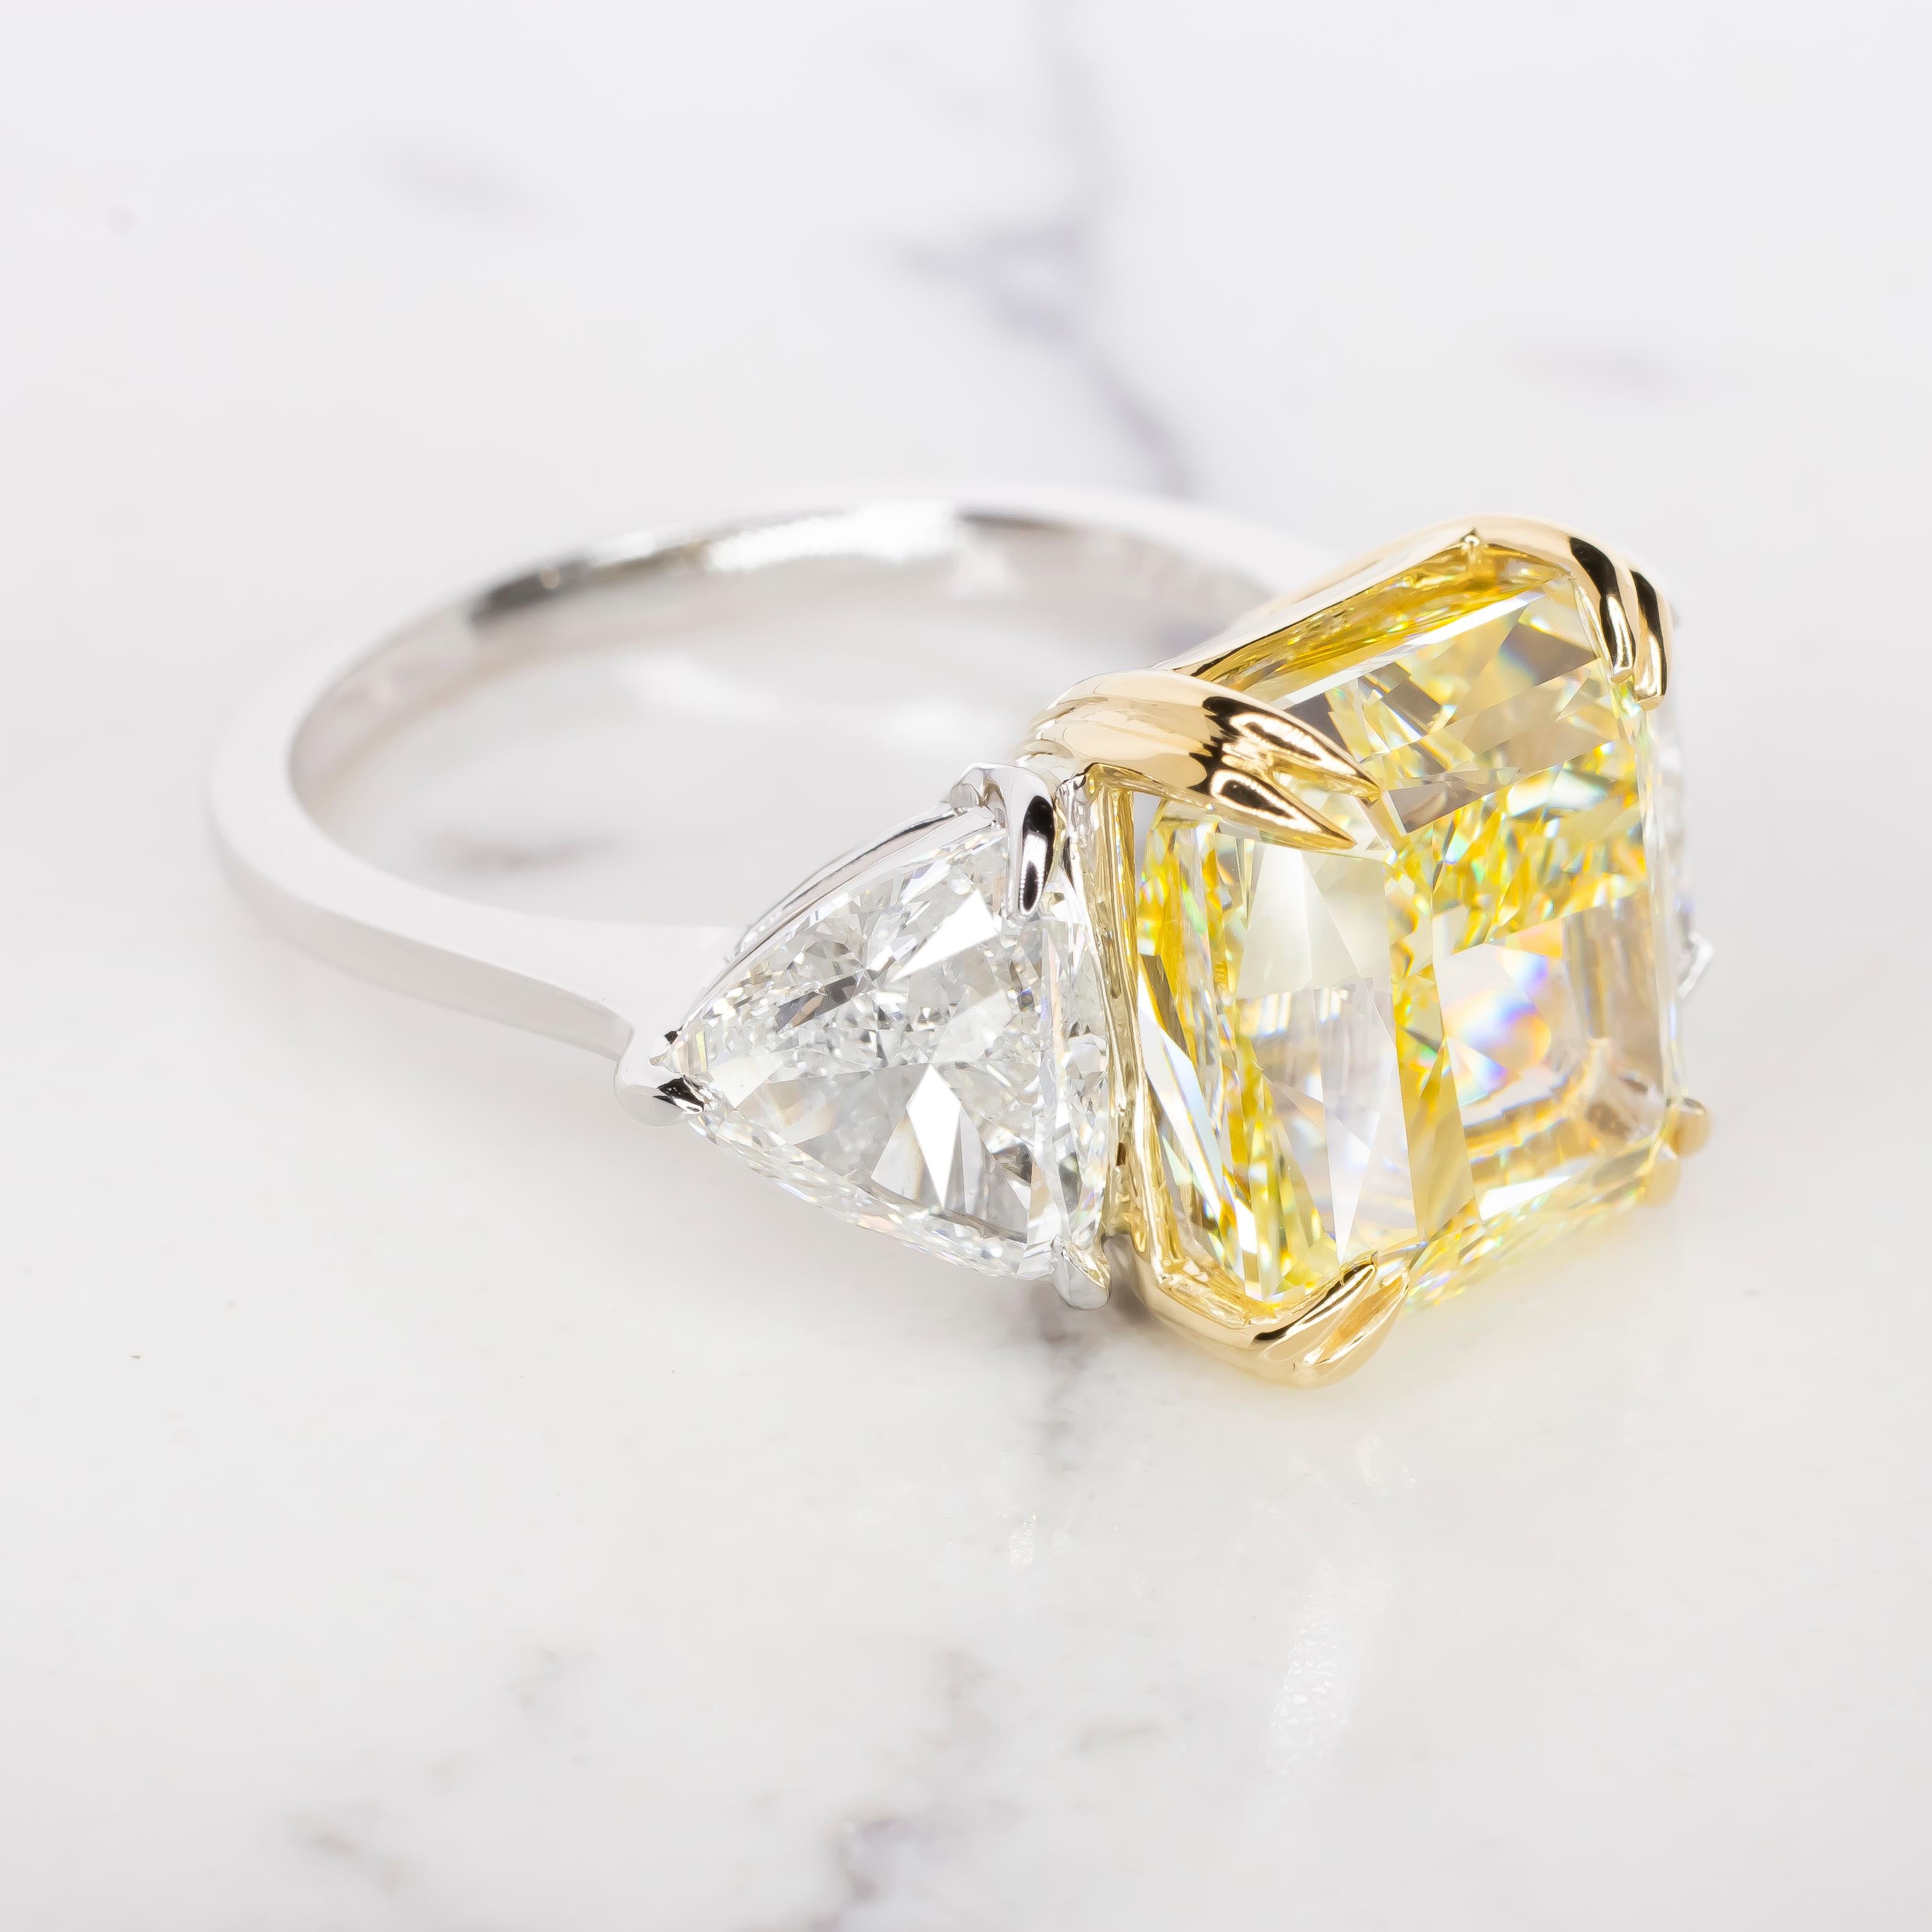 Voici un chef-d'œuvre d'une beauté et d'un prestige inégalés : le 8 carats.  Bague en diamant certifié GIA de couleur jaune fantaisie et de pureté VVS2.

Imaginez une brillance rayonnante qui attire l'attention, émanant de l'exquis diamant taillé en